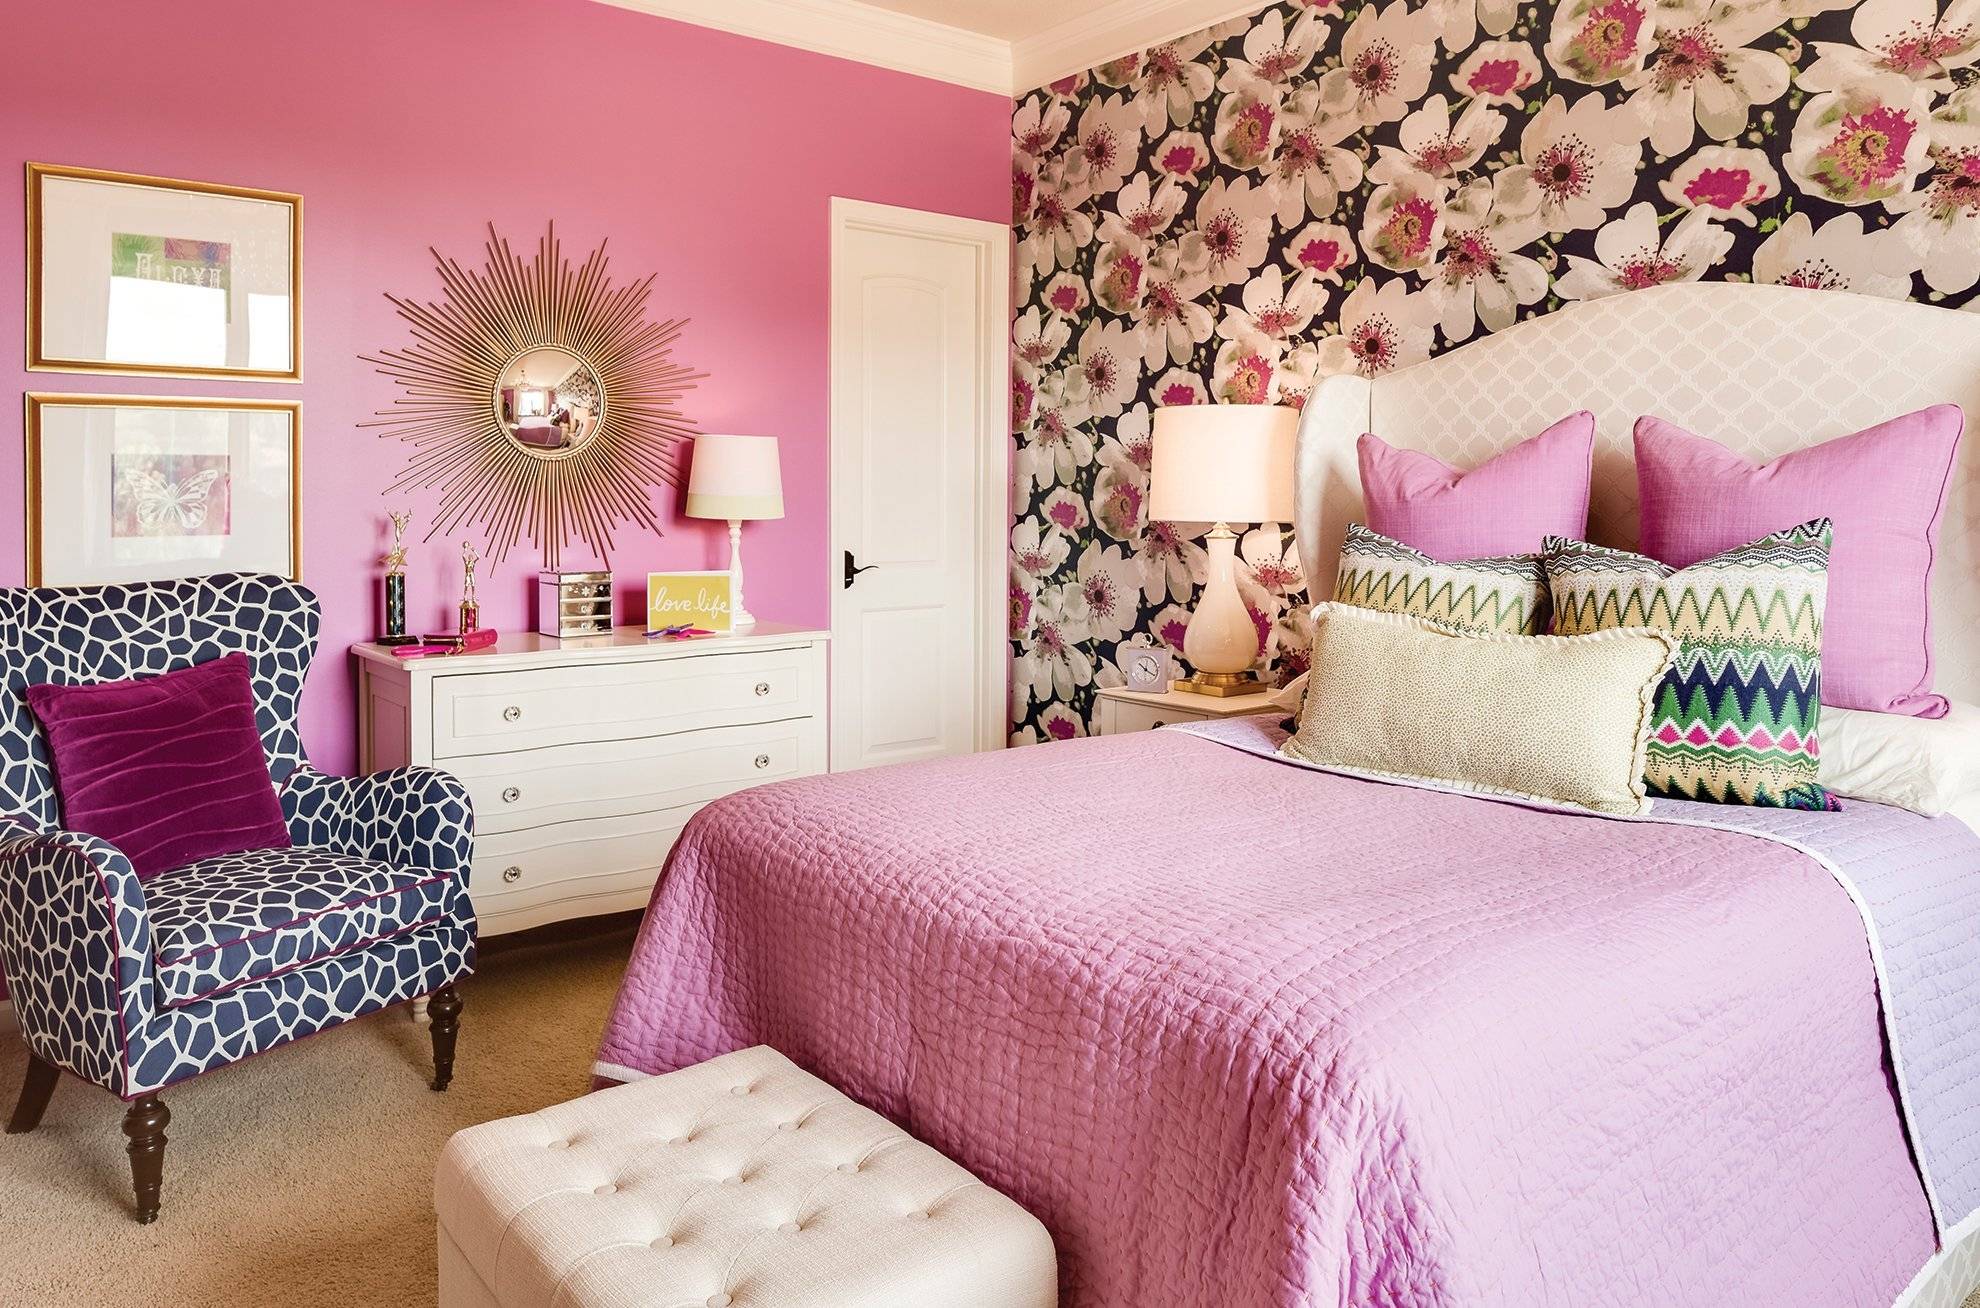 Комната в розовых тонах. Сочетание розового в интерьере. Спальня в ярких тонах. Розовые стены в интерьере. Спальня в розовых тонах.